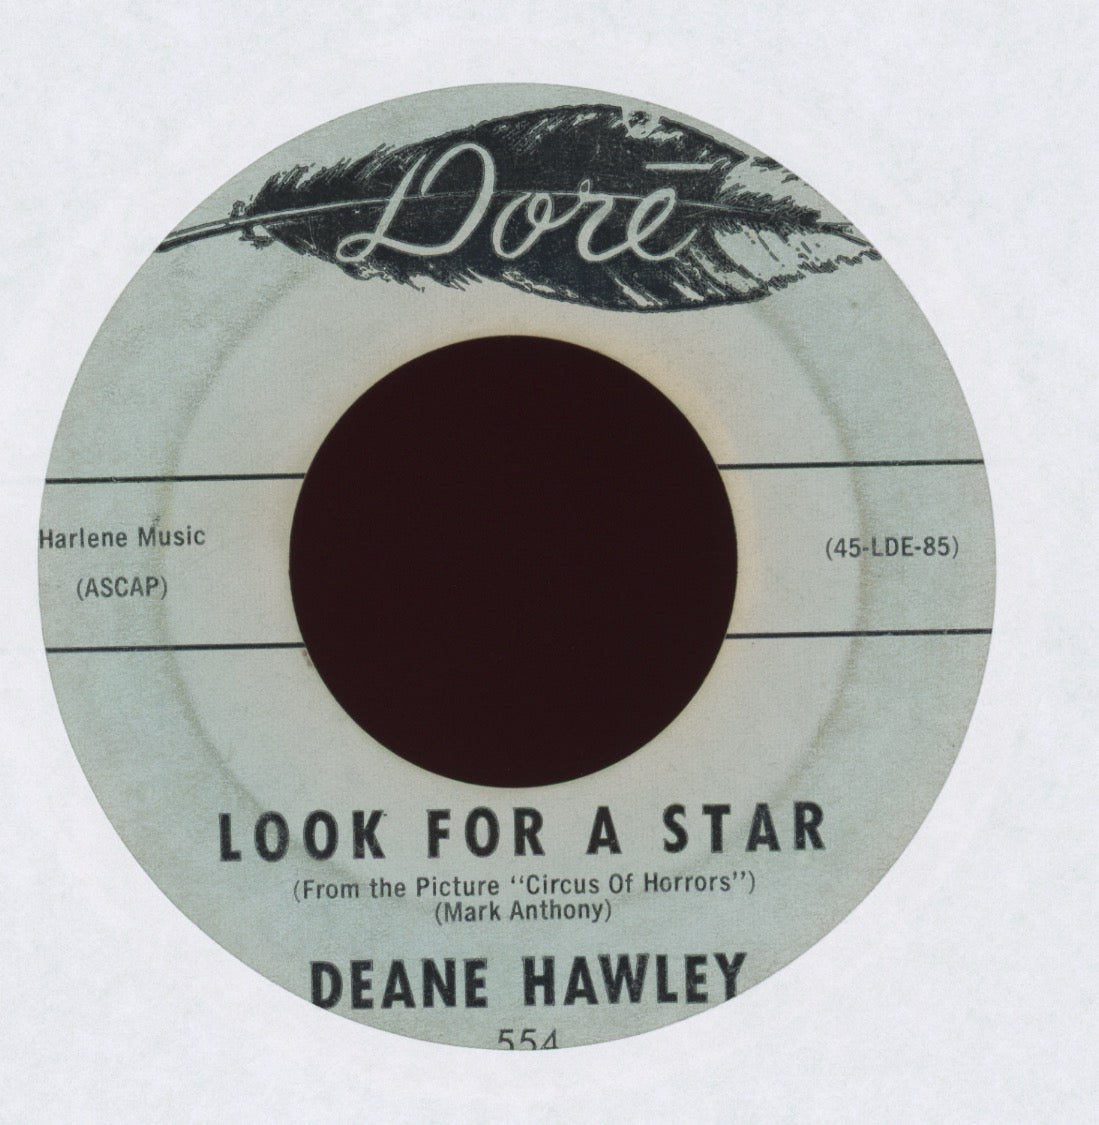 Deane Hawley - Bossman on Dore